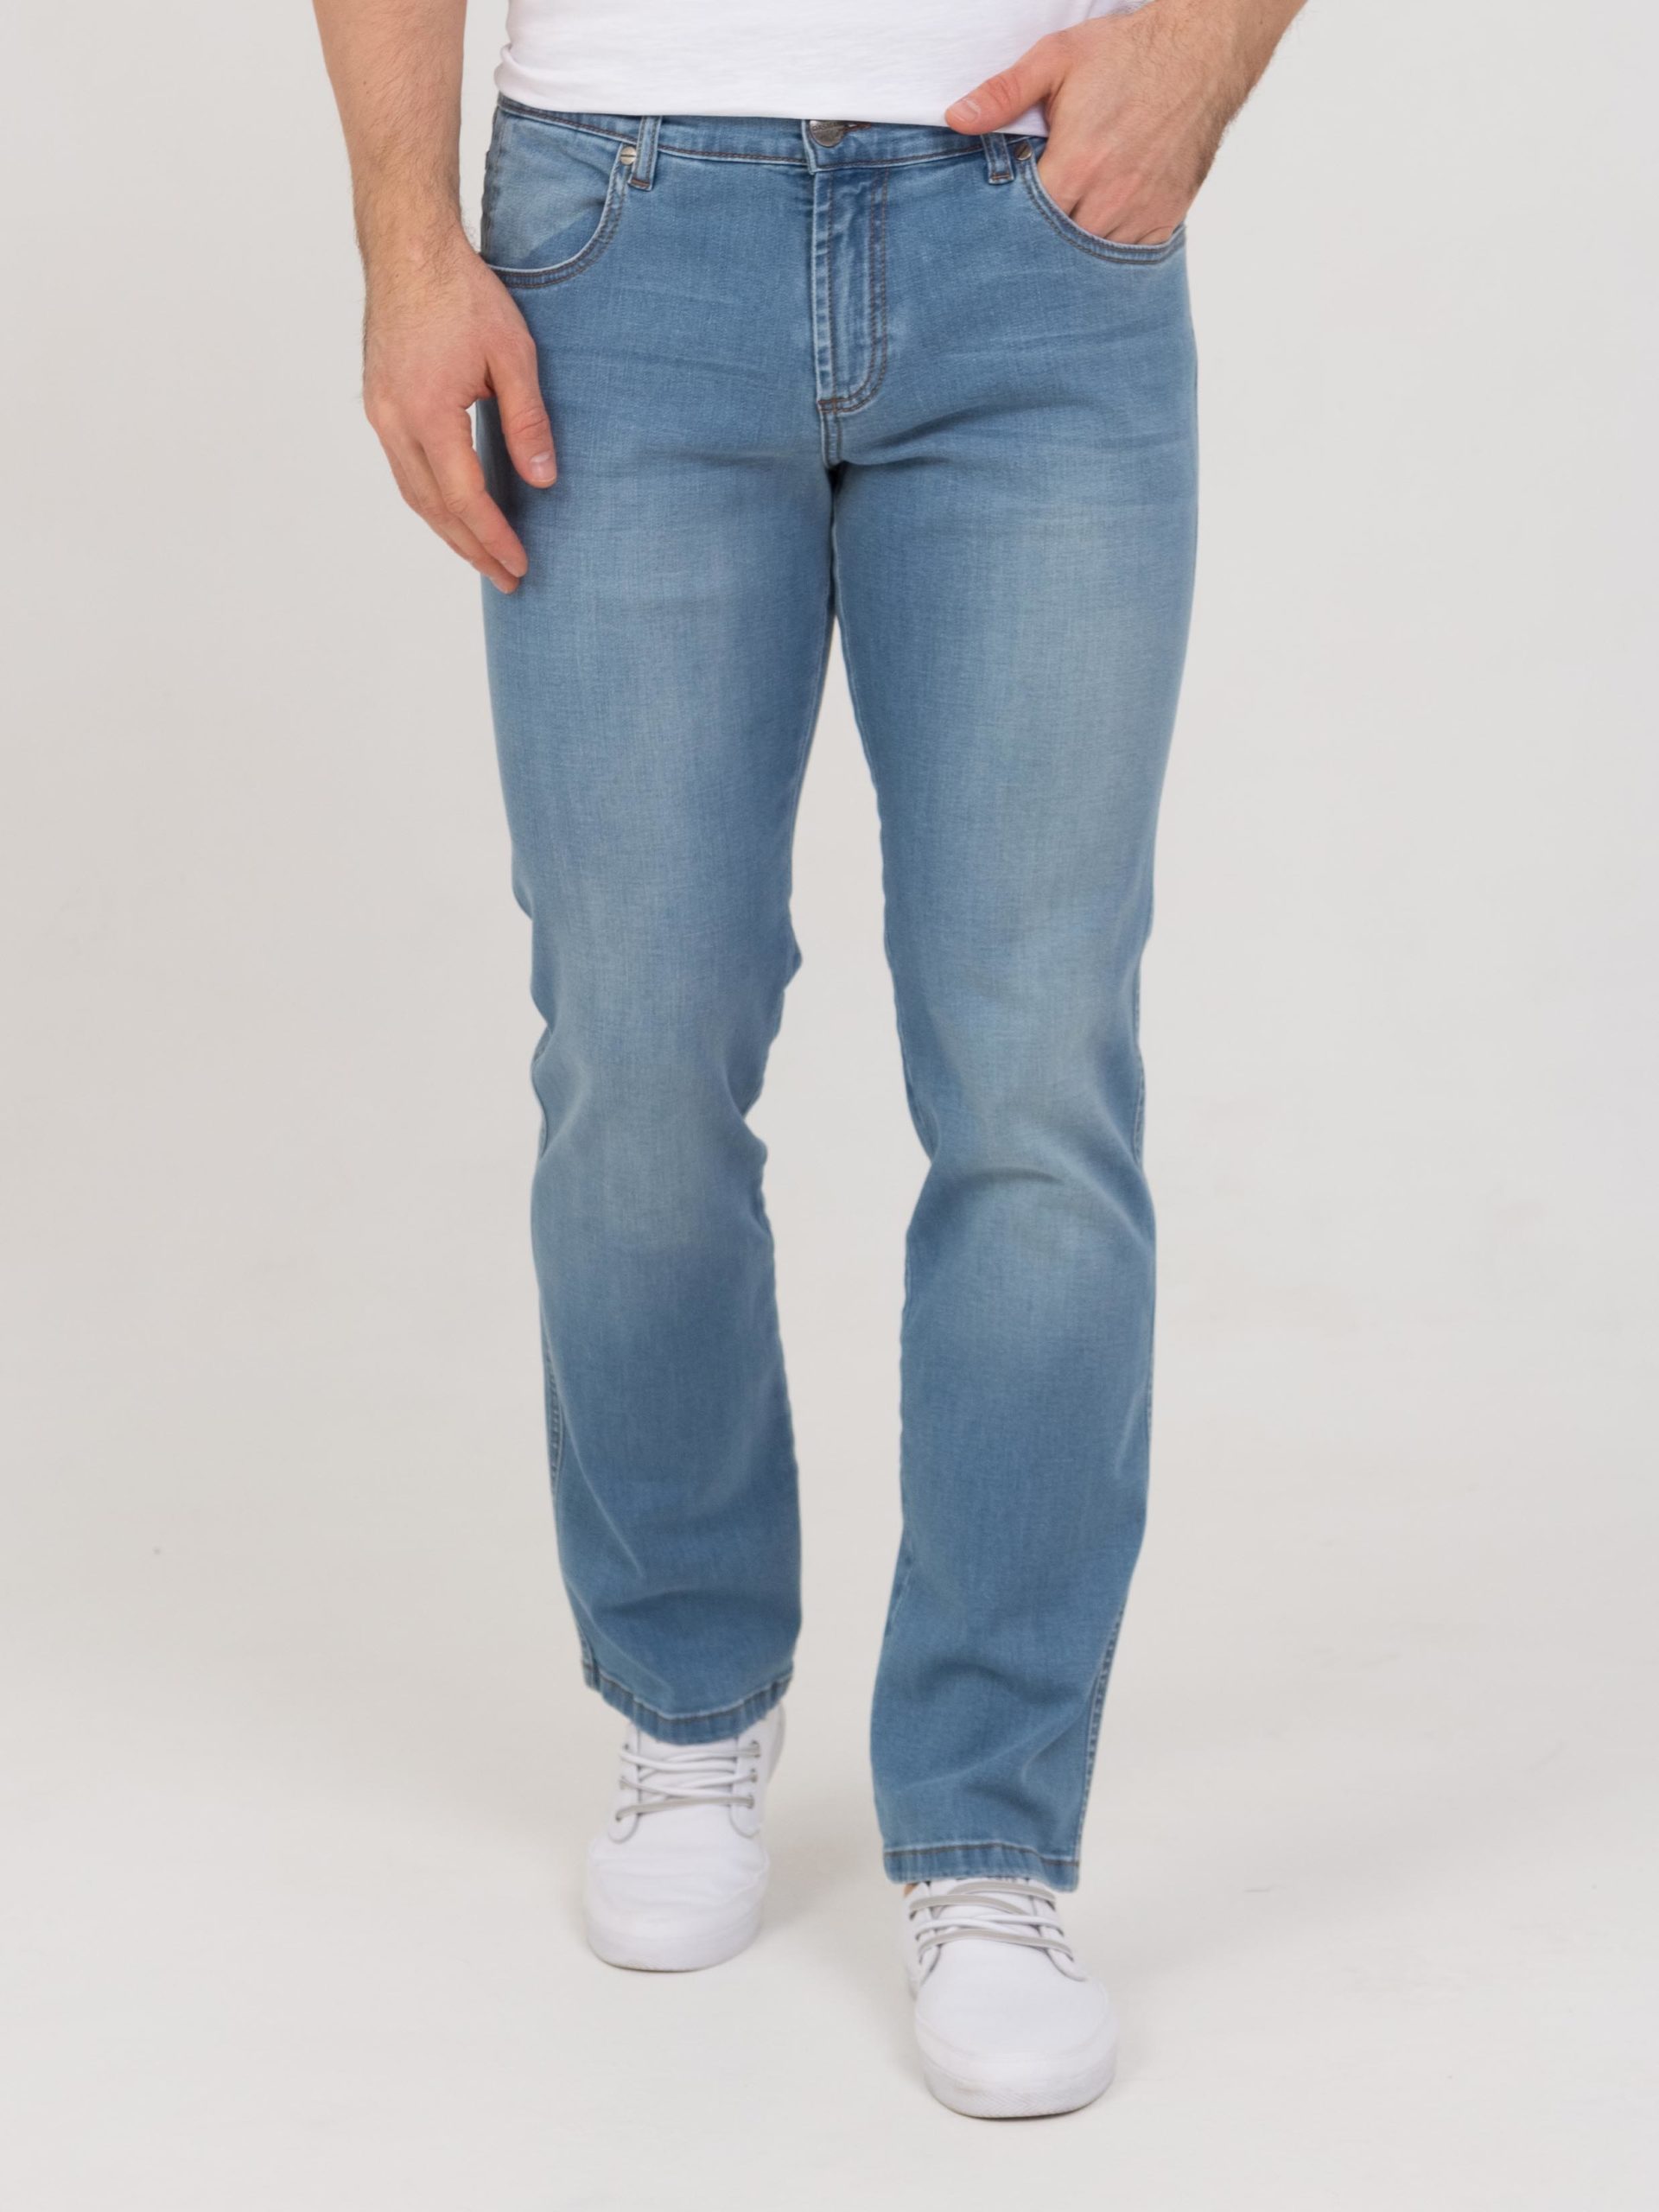 джинсы мужской размер 40